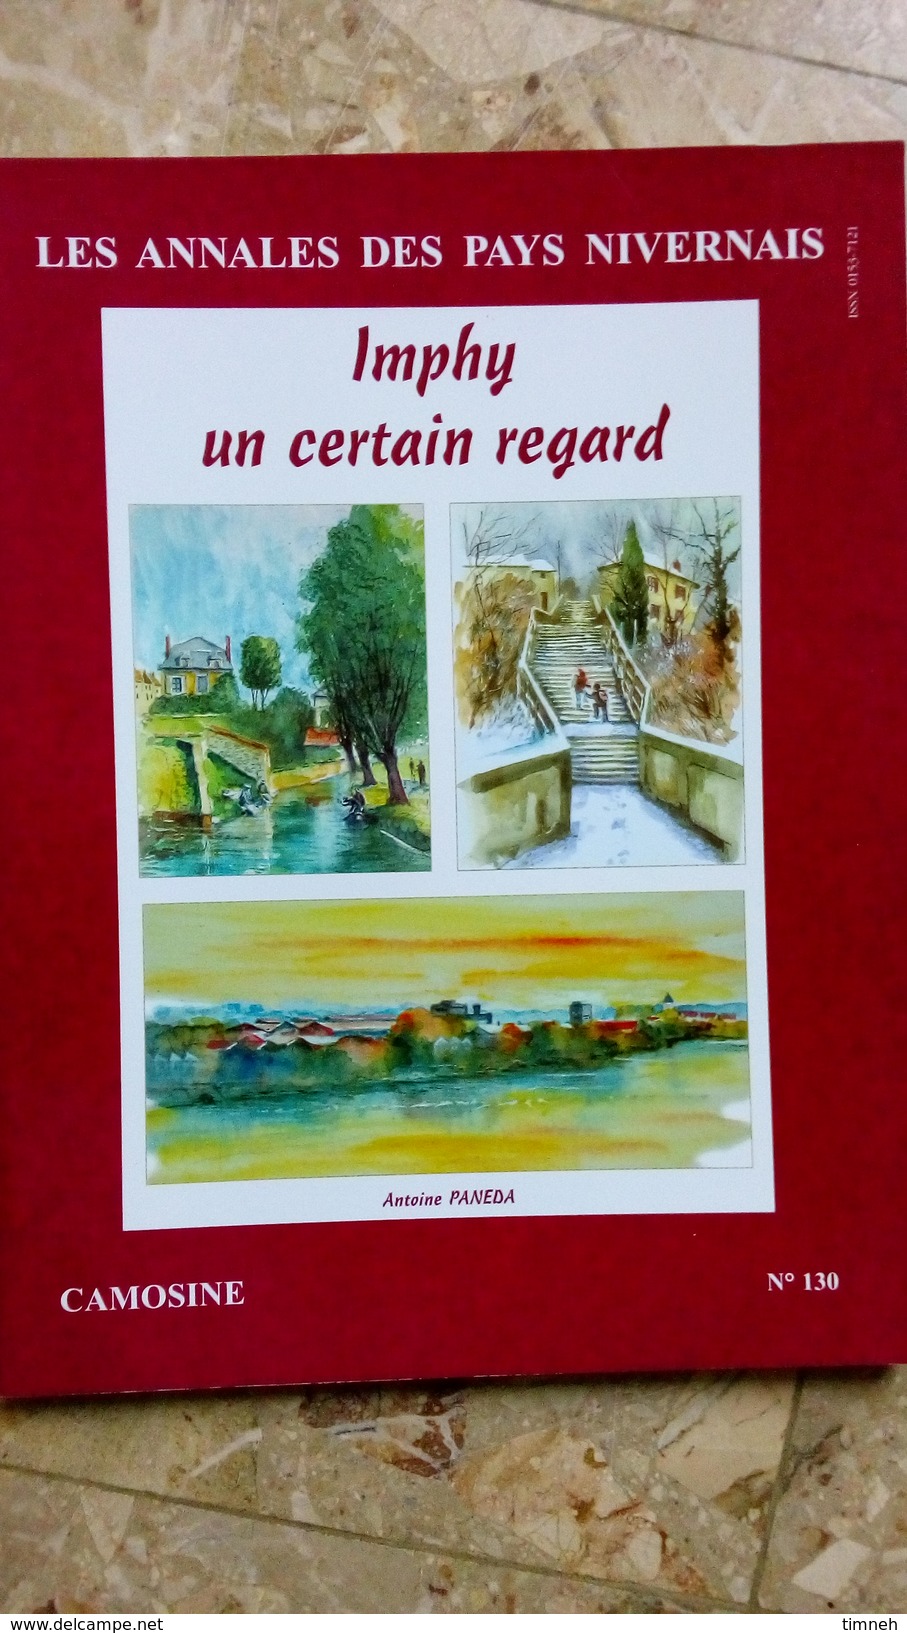 CAMOSINE - N°130 IMPHY UN CERTAIN REGARD - PANEDA -  Les Annales Du Pays Nivernais 2007 - Bourgogne